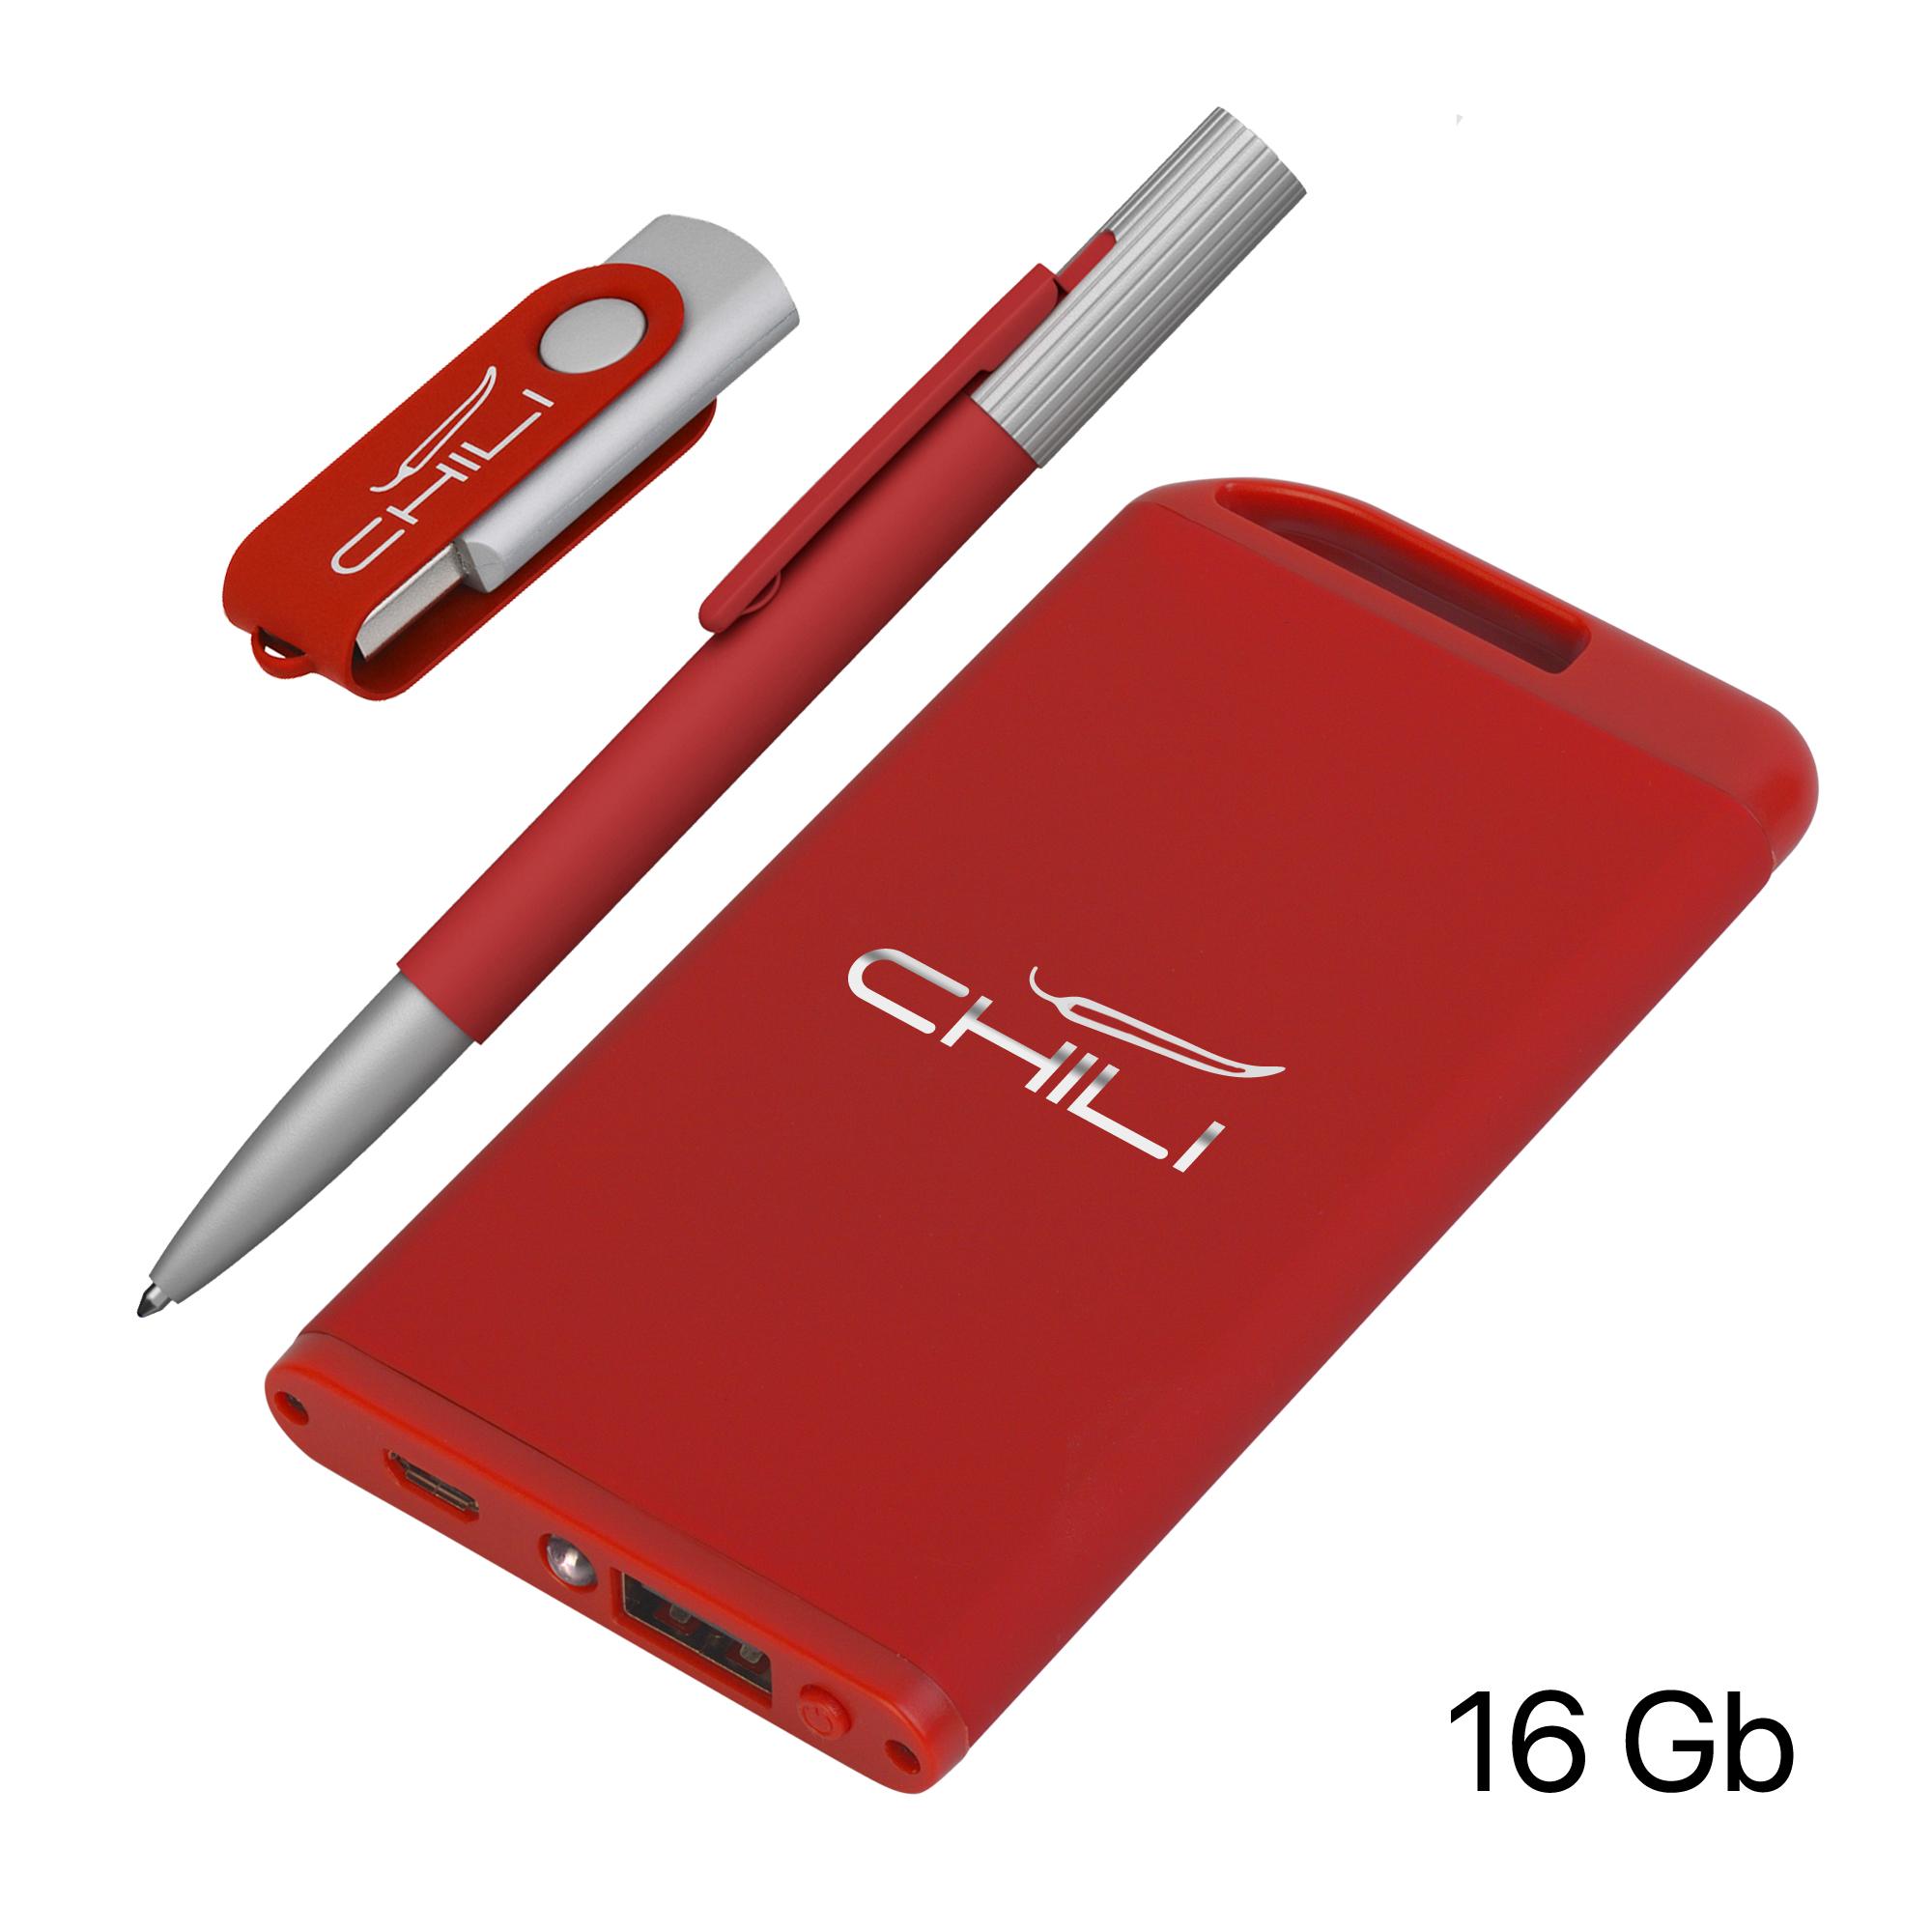 Набор ручка "Clas" + флеш-карта "Vostok" 16Гб + зарядное устройство "Theta" 4000 mAh в футляре, покрытие soft touch#, цвет красный, фото 1